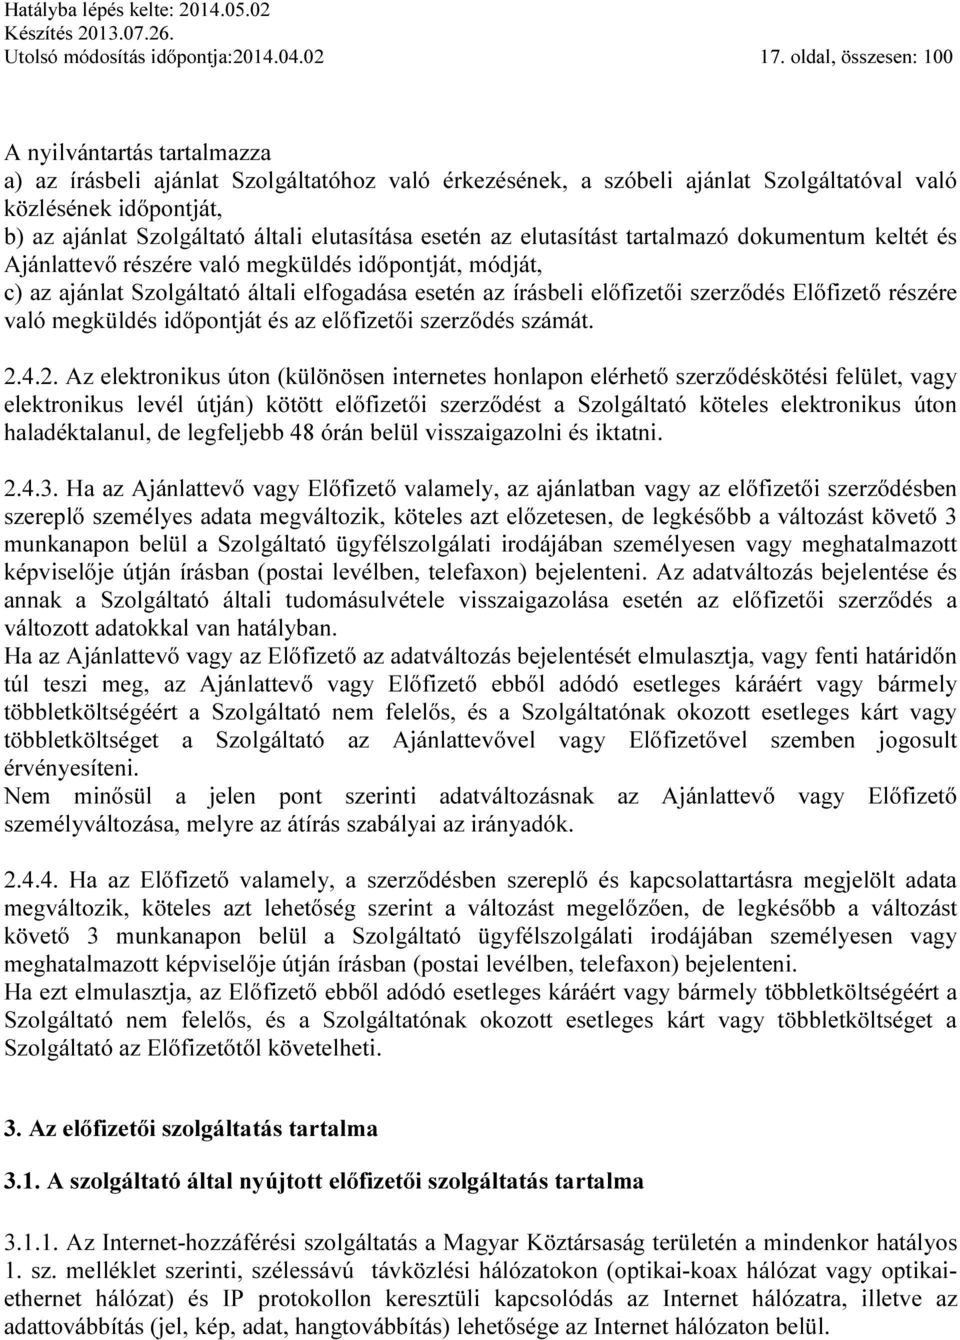 Oláh & Társa KFT. szolgáltató. tagja. Általános Szerződési Feltételek  internet elérési szolgáltatáshoz - PDF Ingyenes letöltés